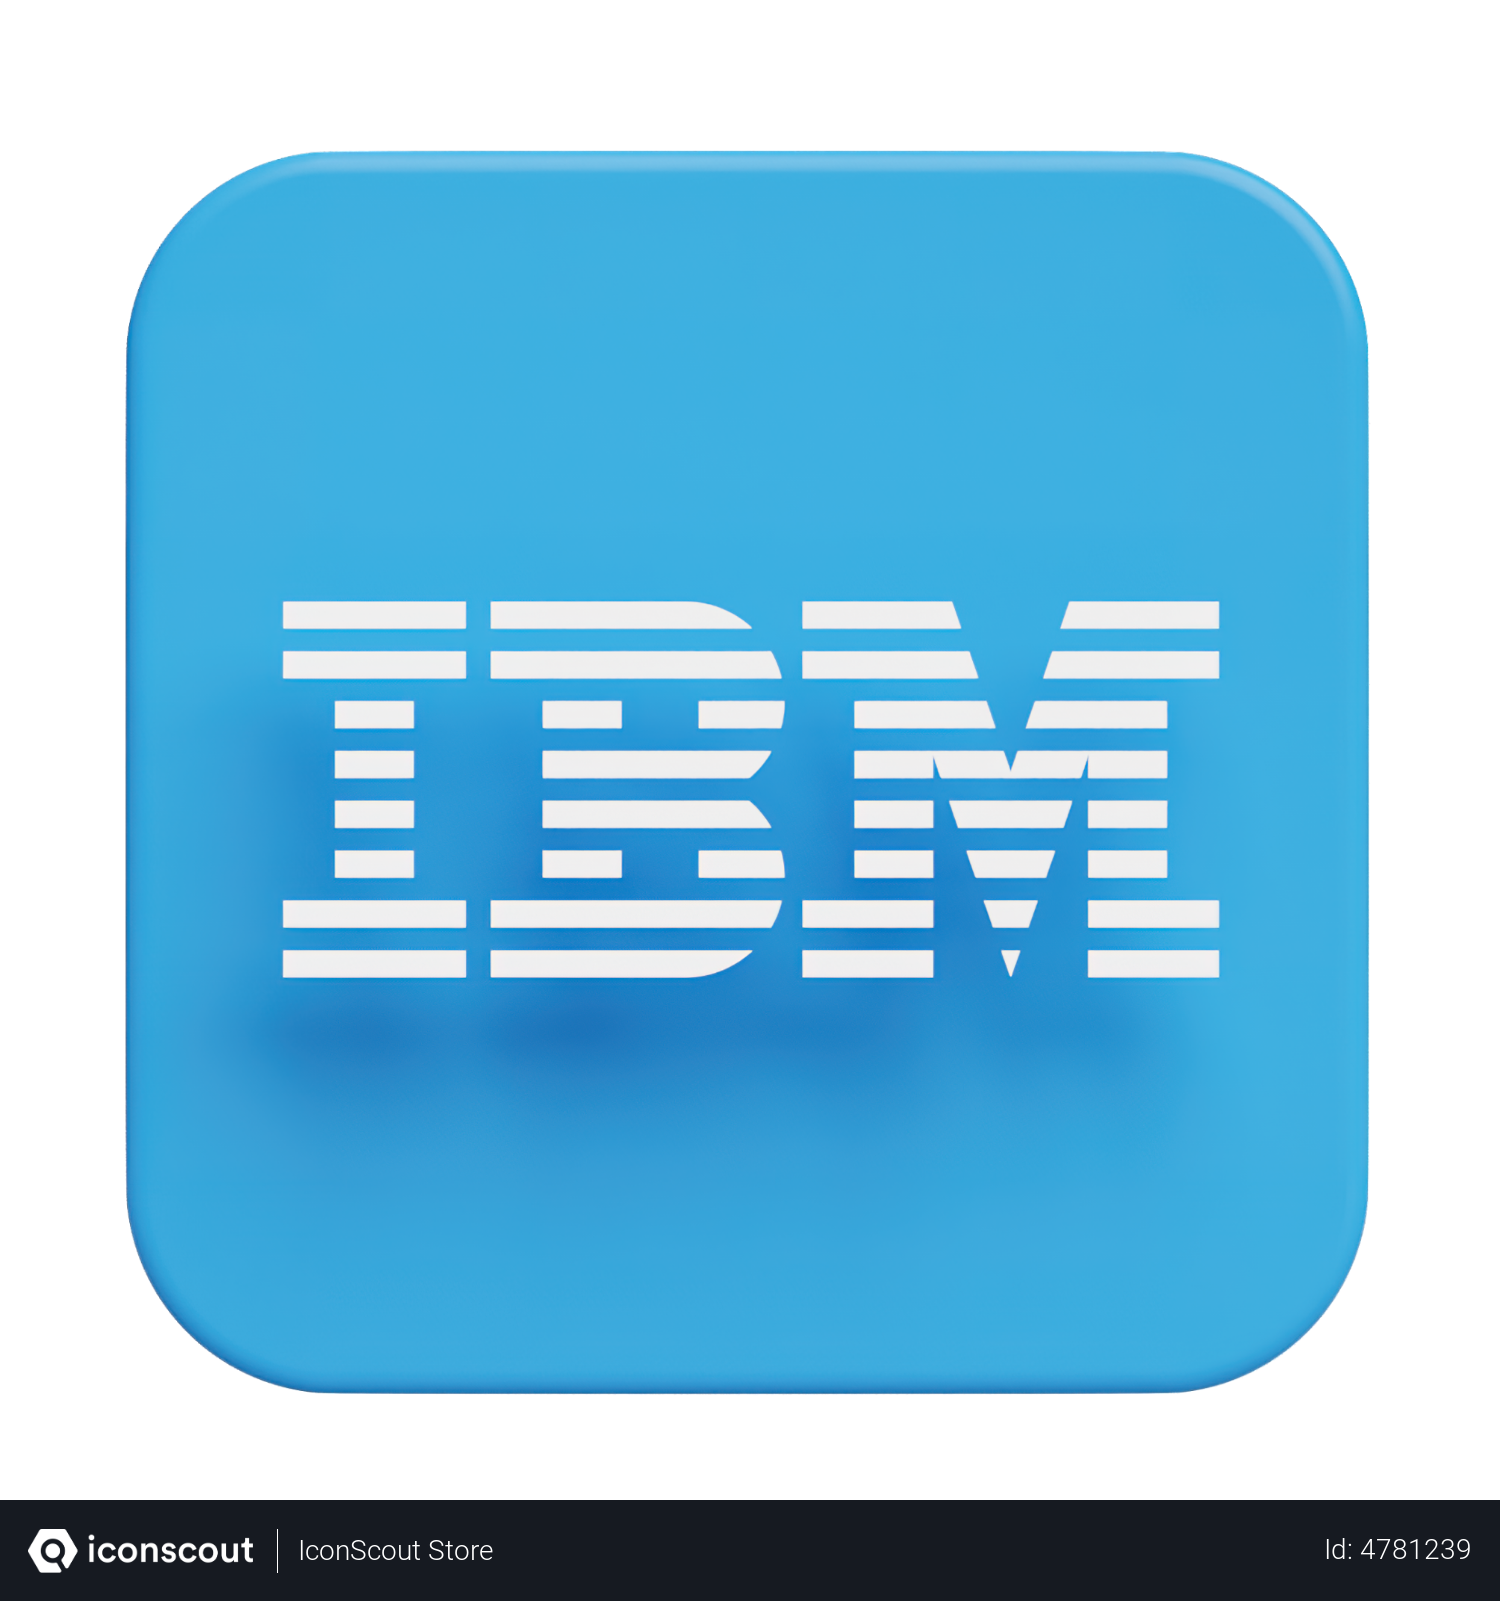 IBM Design Language – Rebus